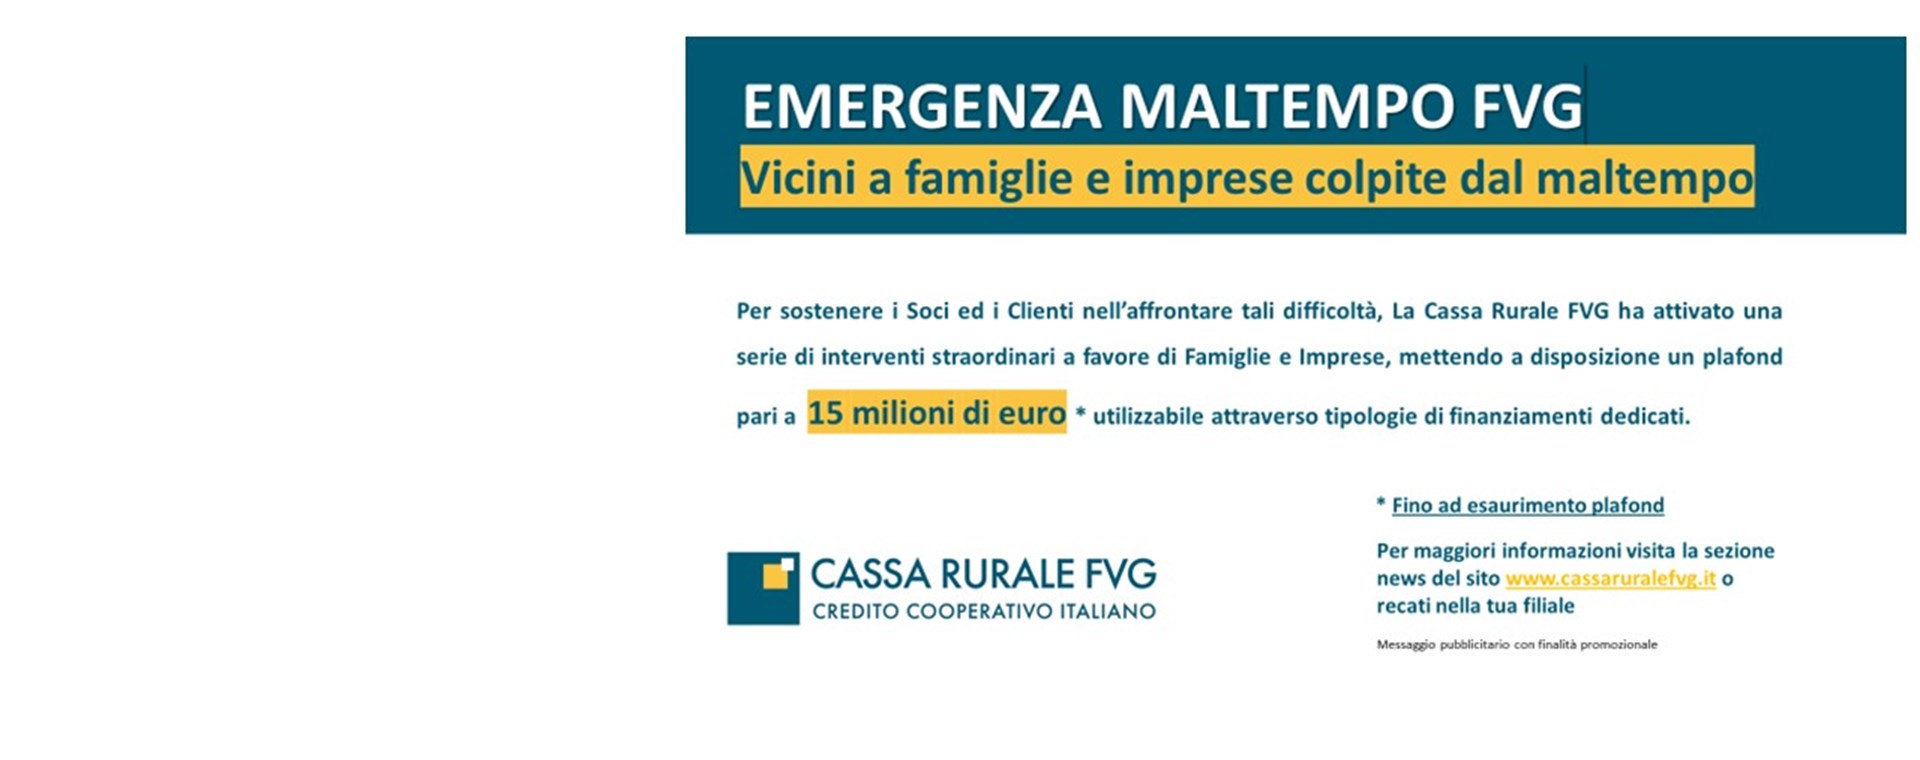 Plafond di 15 milioni di euro per sostenere famiglie e imprese colpite dal maltempo 